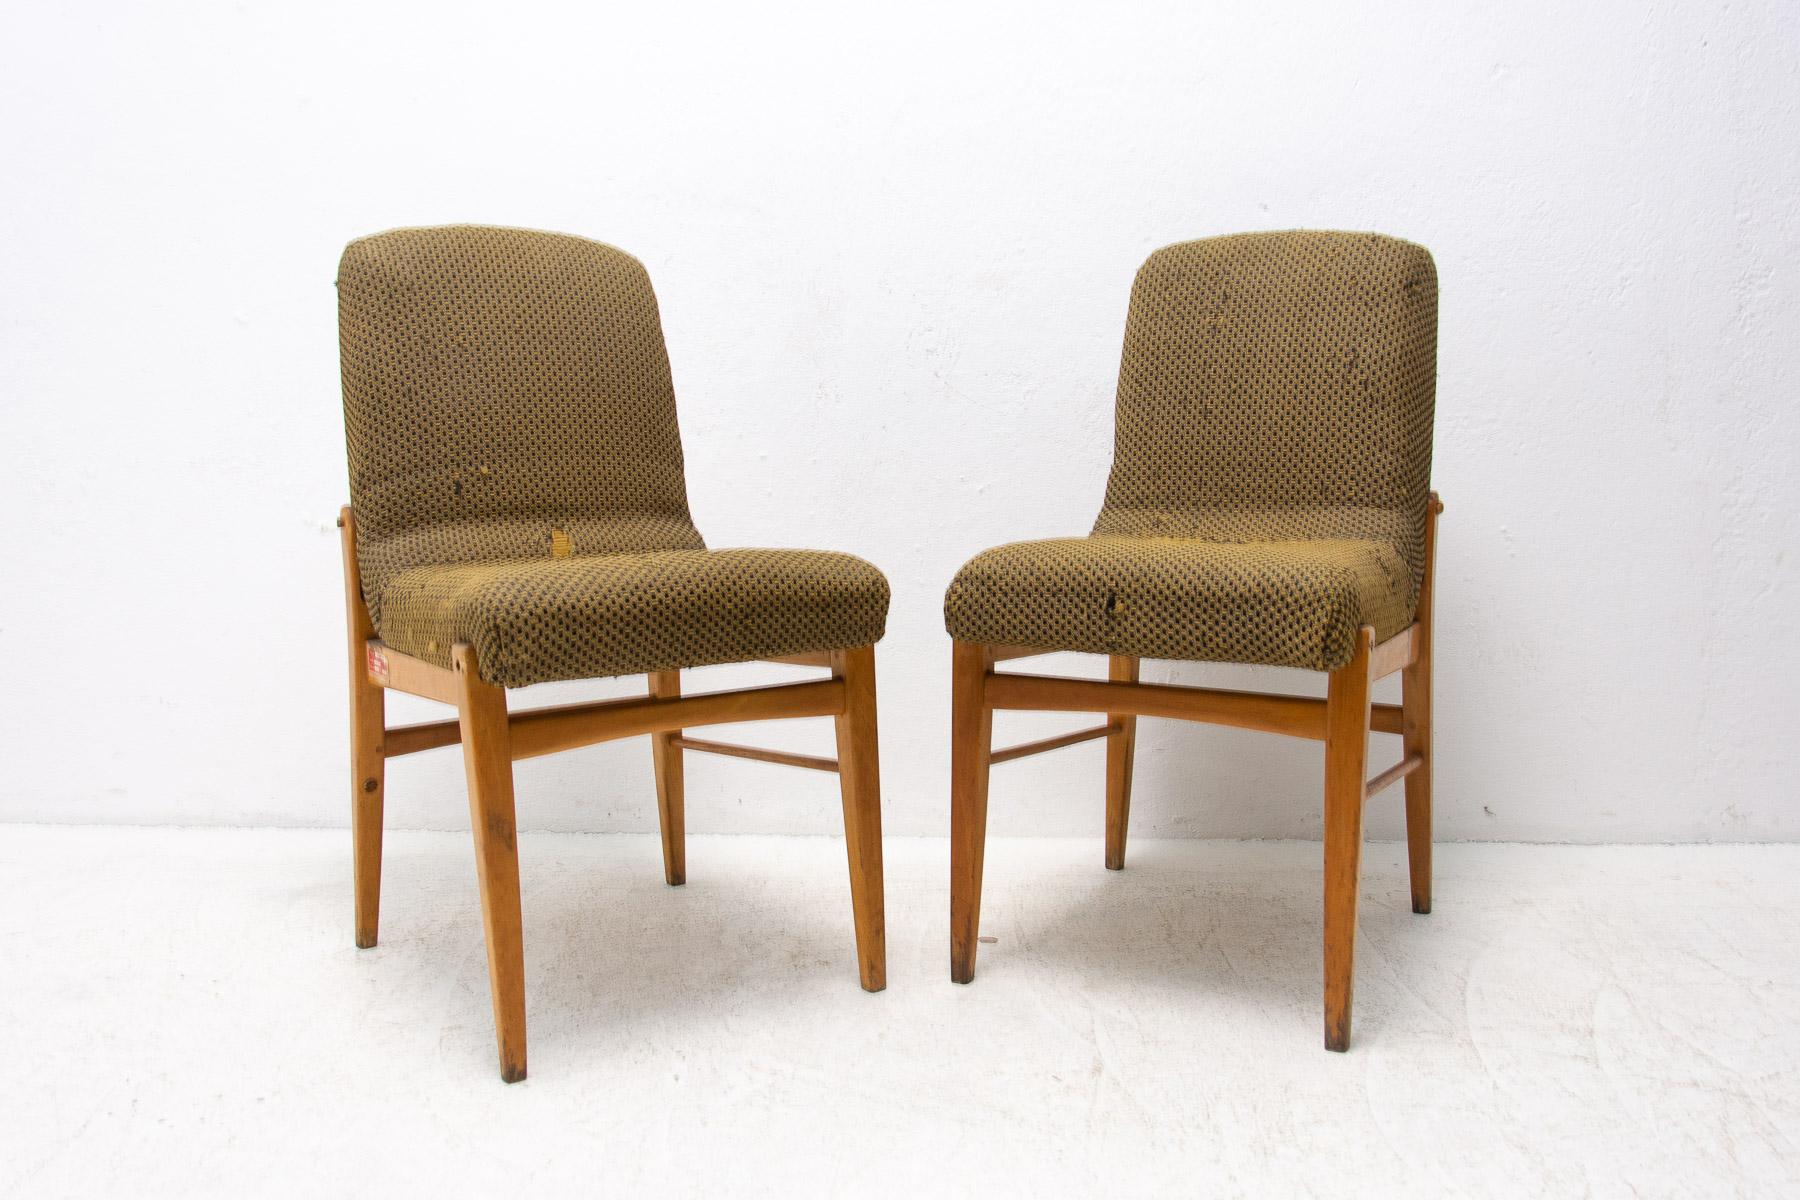 Ein gepolsterter Esszimmerstuhl, hergestellt in der ehemaligen Tschechoslowakei in den 1960er Jahren. Die Stühle sind aus Buchenholz gefertigt. Sehr interessante Formgebung. Die Polsterung weist deutliche Alters- und Gebrauchsspuren auf und müsste